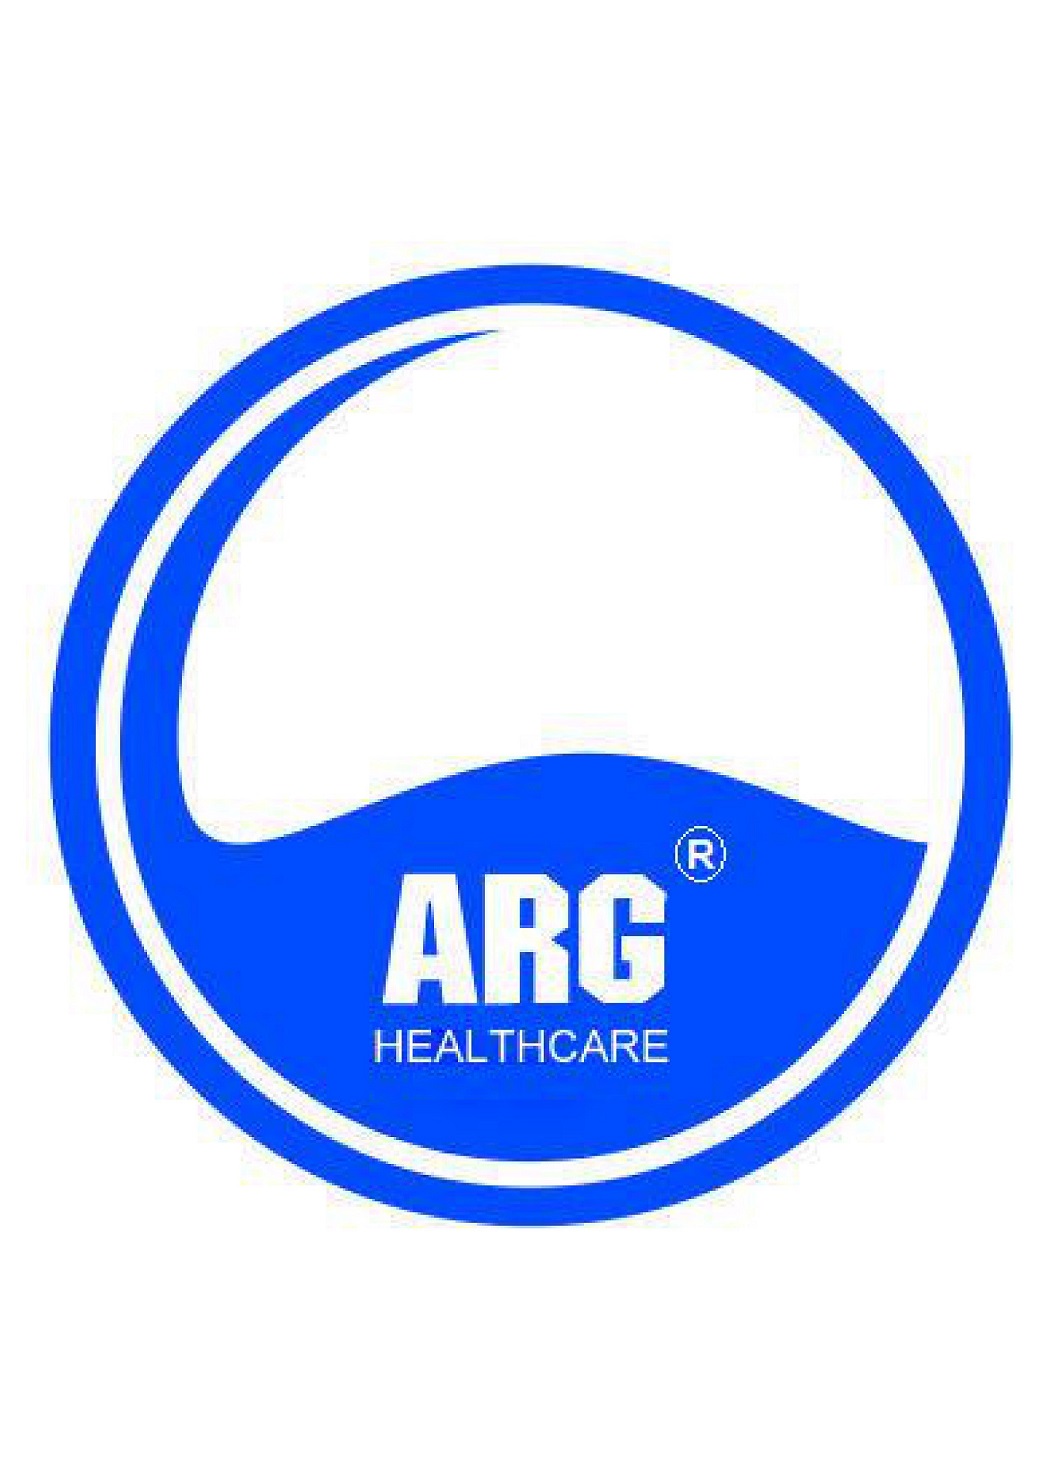 ARG HEALTH CARE